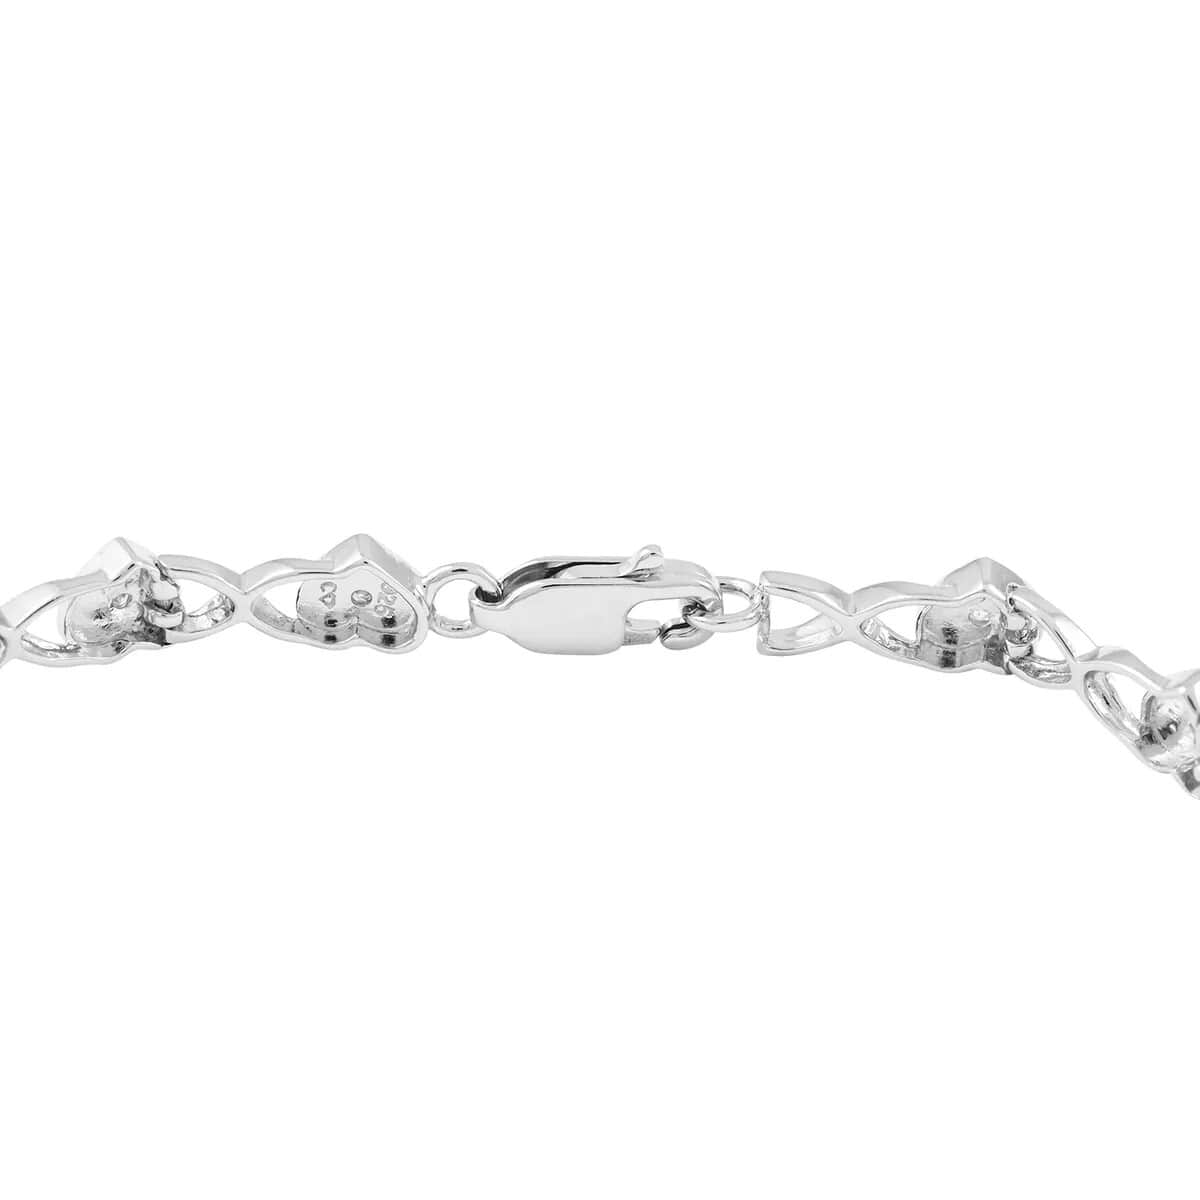 Diamond Bracelet , Heart Bracelet ,Link Bracelet , Sterling Silver Bracelet  , Heart Link Bracelet , Diamond Heart Bracelet (7.25 In) 0.10 ctw